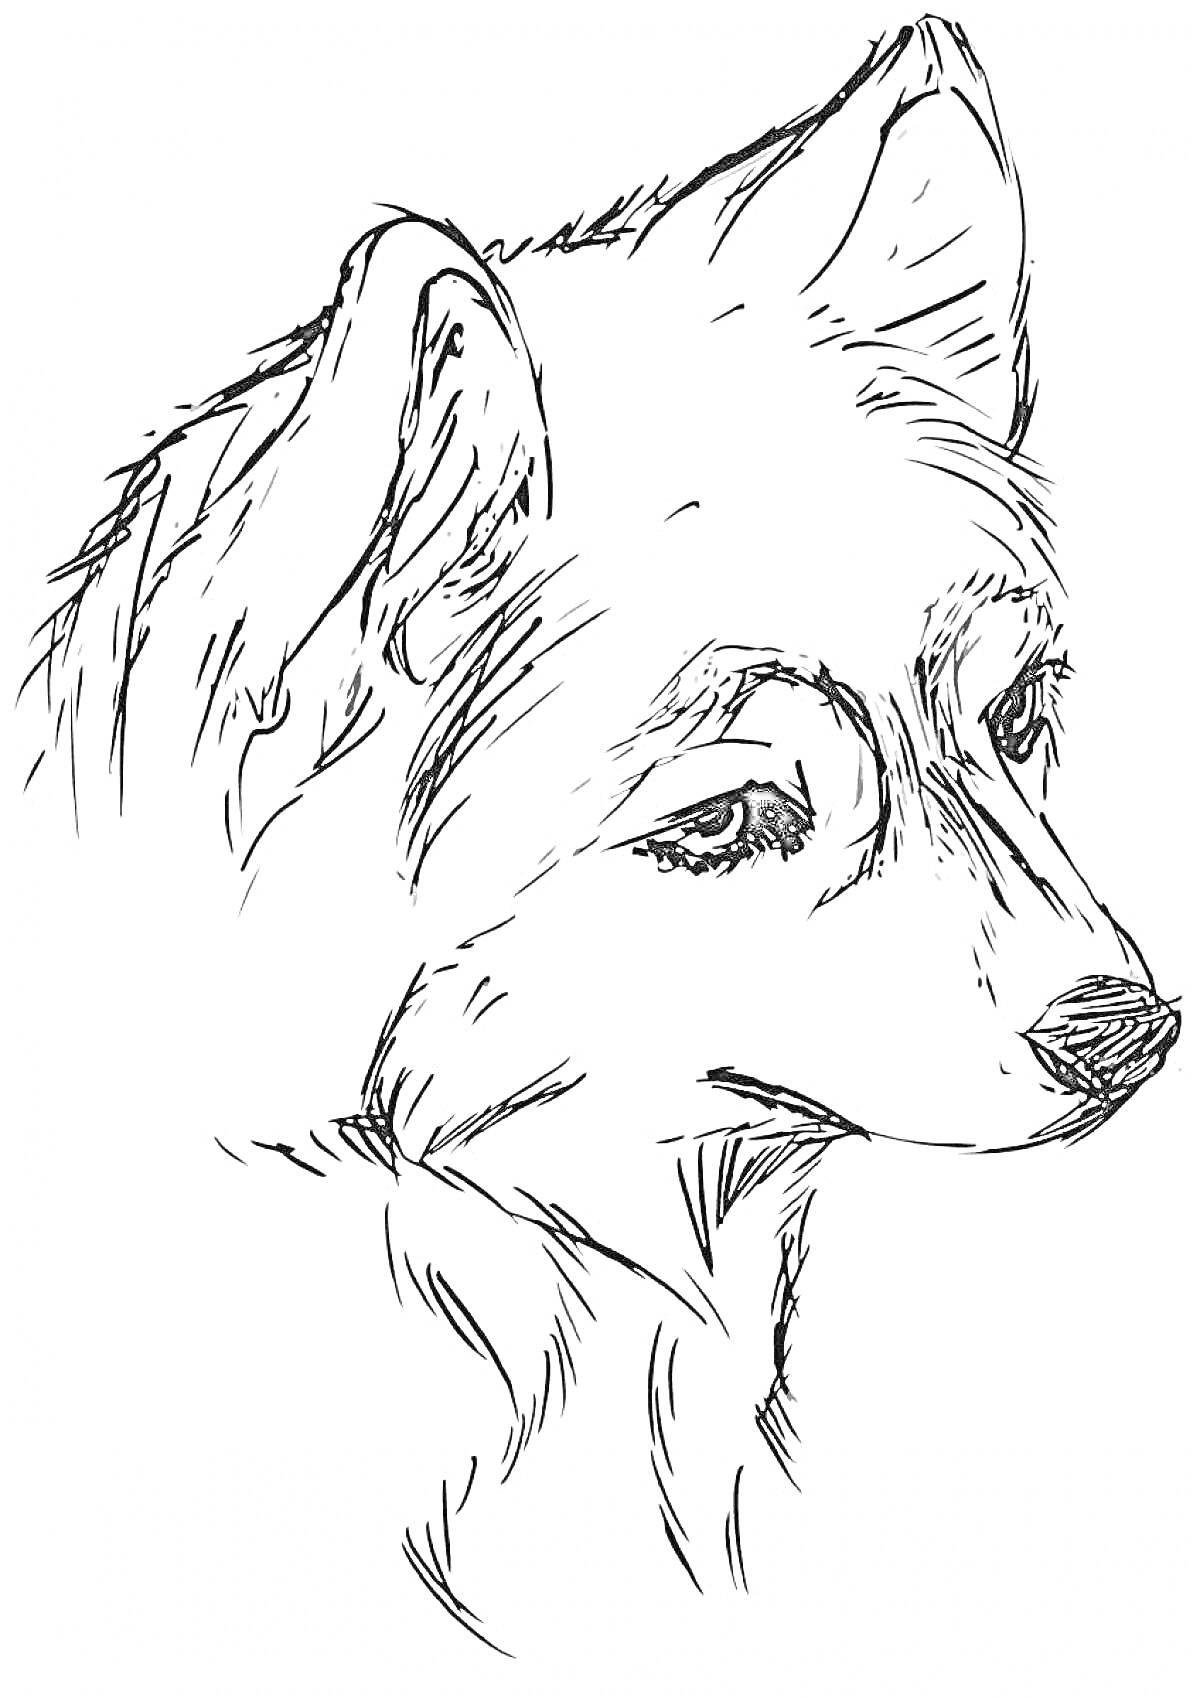 Портрет хаски, набросок головы собаки с деталями морды и ушами